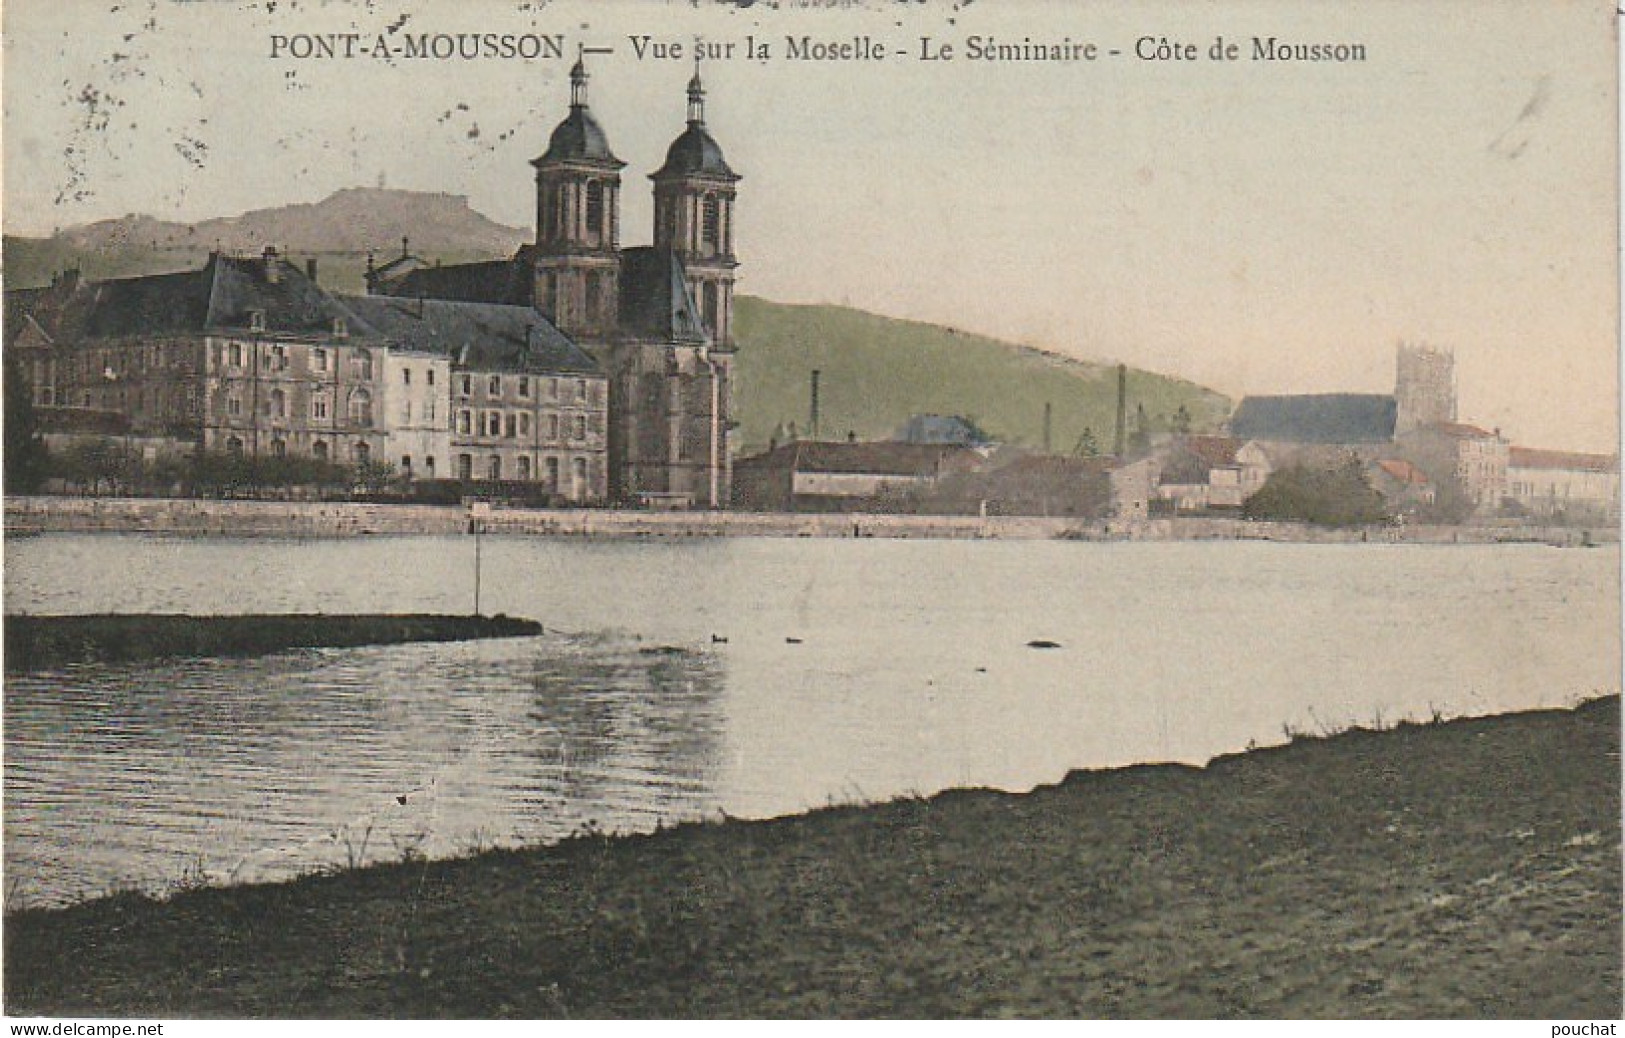 XXX -(54) PONT A MOUSSON - VUE SUR LA MOSELLE - LE SEMINAIRE - COTE DE MOUSSON - CARTE COLORISEE - 2 SCANS - Pont A Mousson